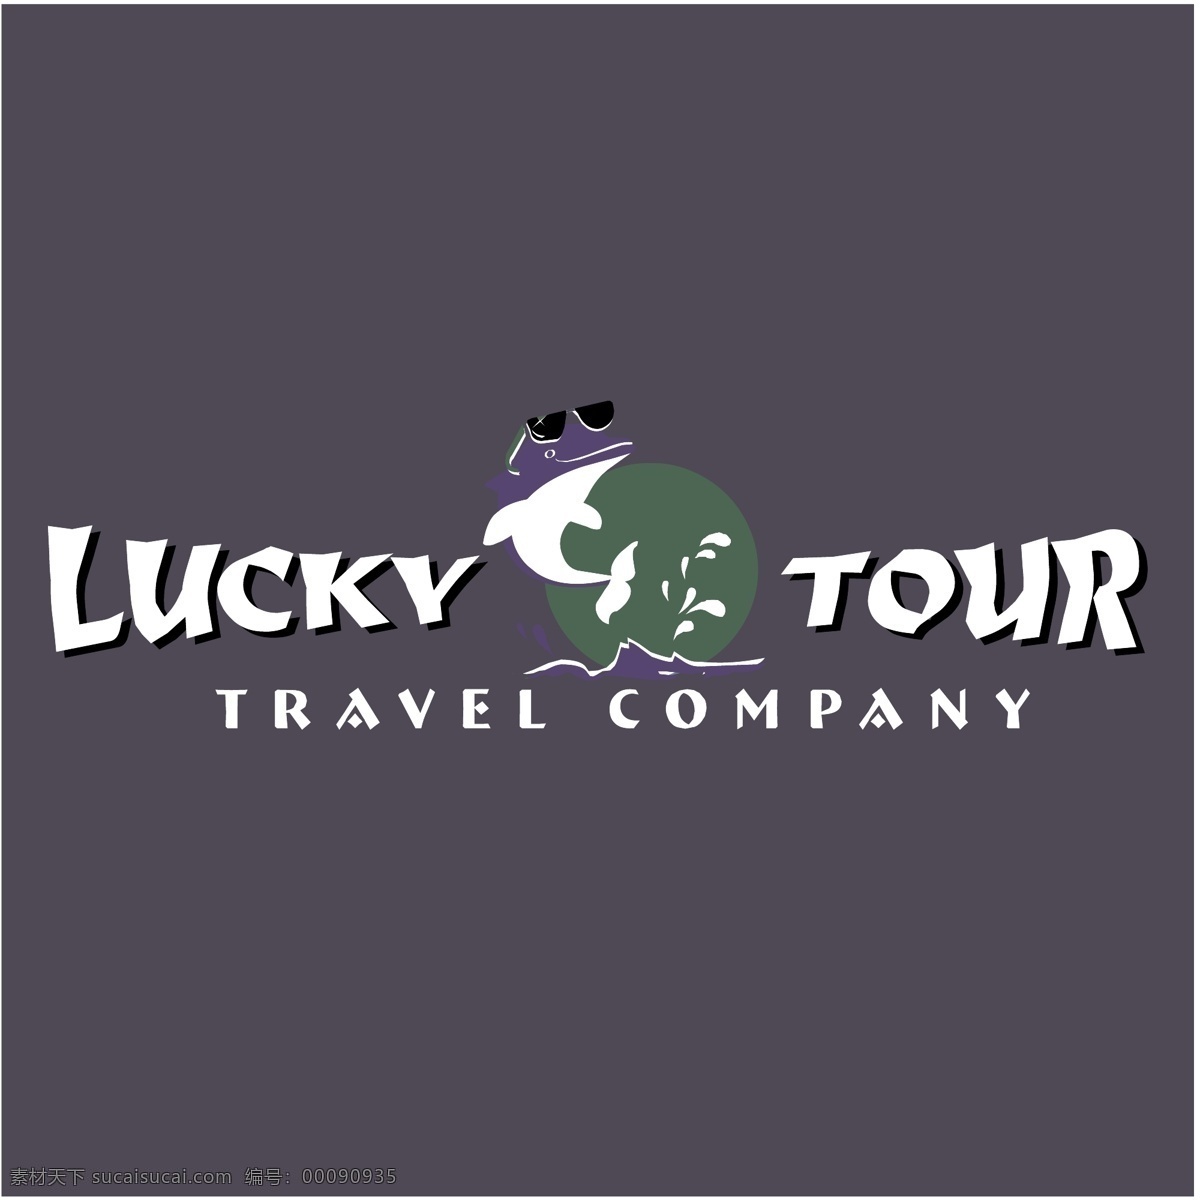 幸运 之旅 免费 旅游 标识 psd源文件 logo设计